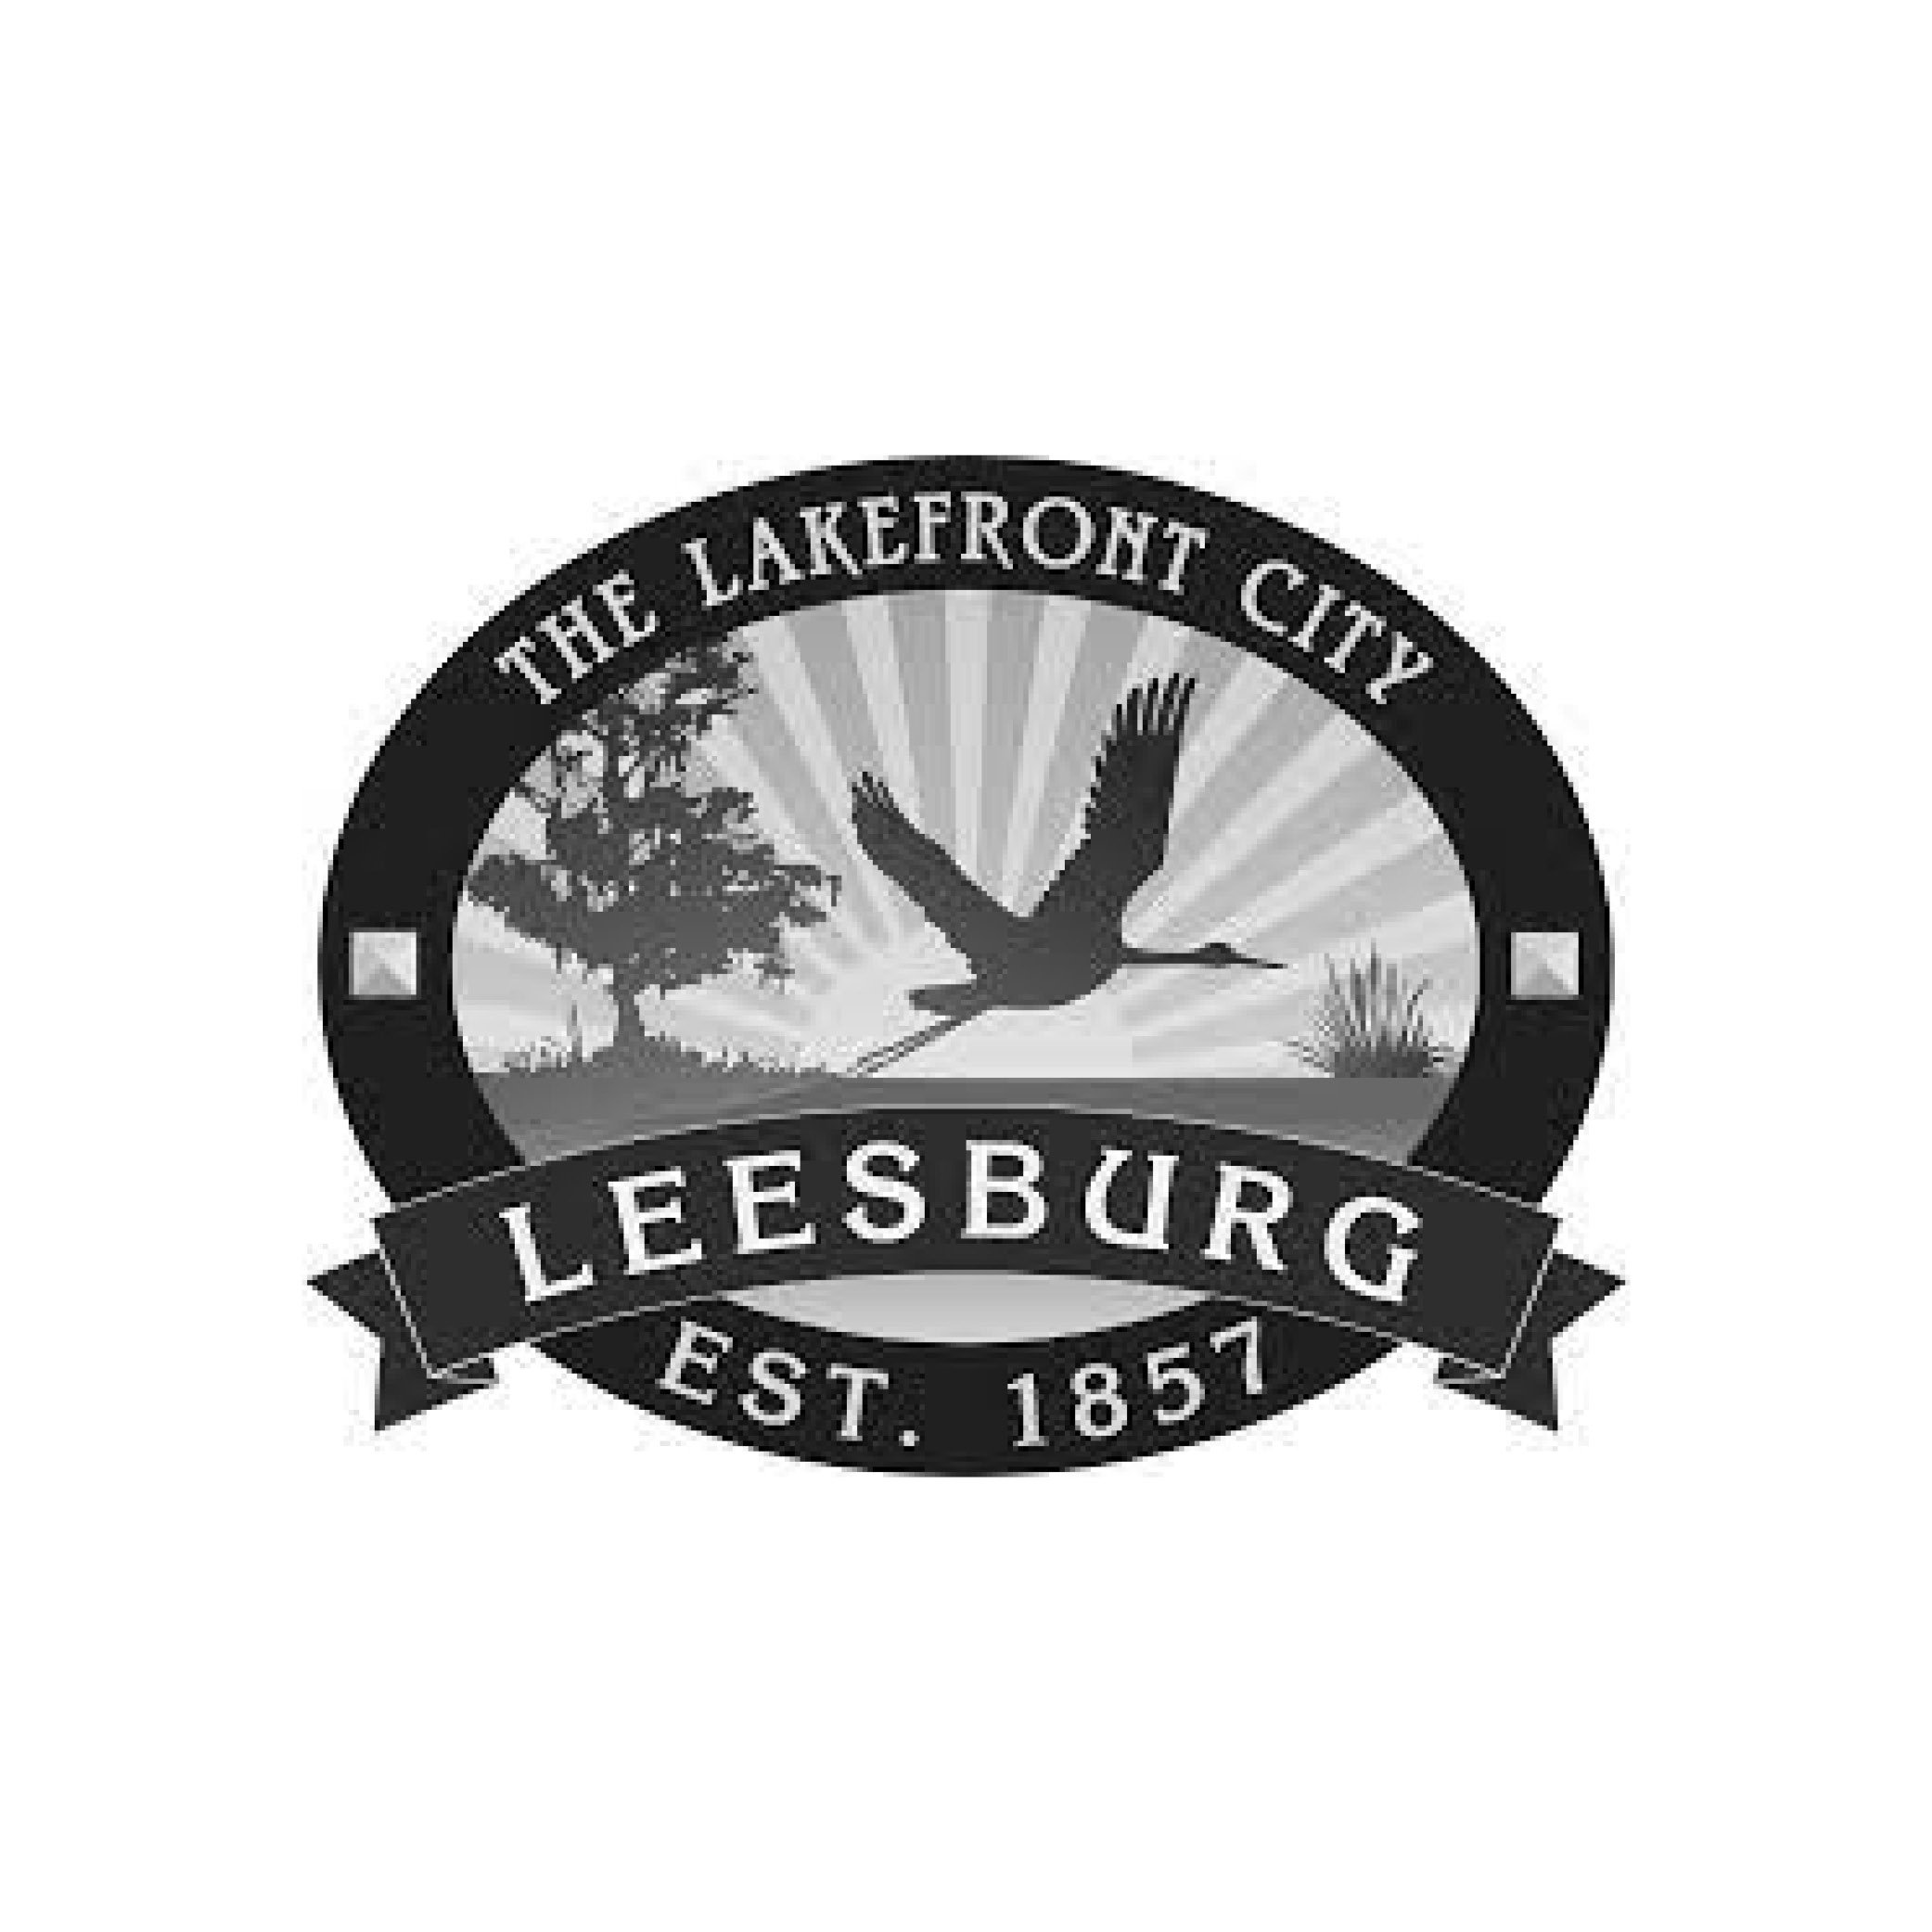 City of Leesburg